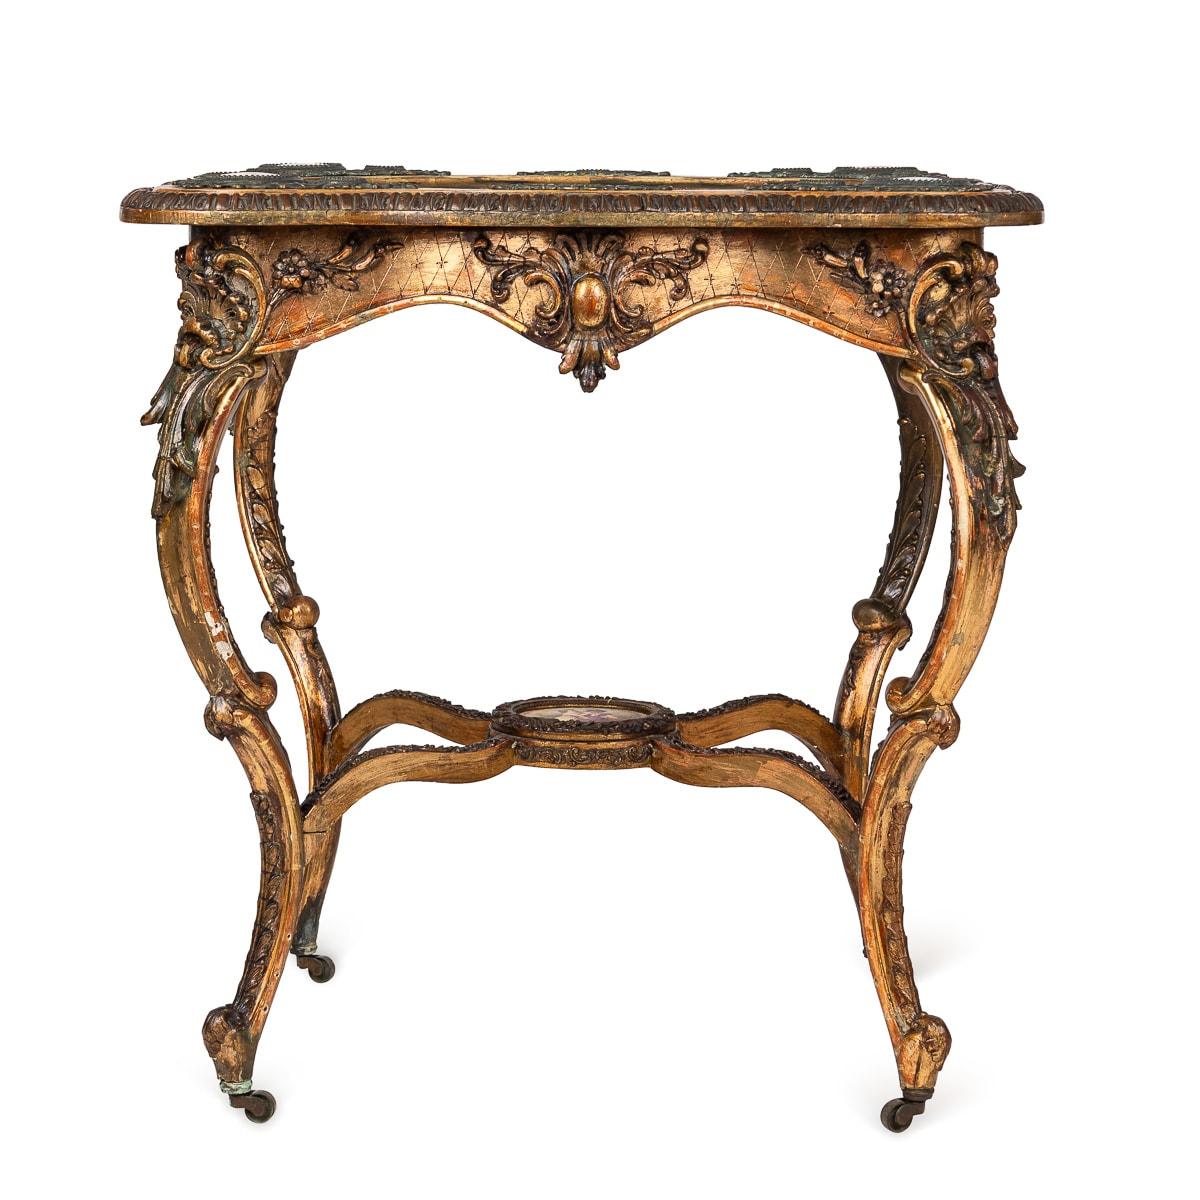 Ancienne table française en bois doré du 19ème siècle, fabriquée dans l'opulent style Louis XV, mettant en valeur de superbes plaques en porcelaine de Vienne. Le plateau central représente une scène de cour aristocratique, tandis que d'autres